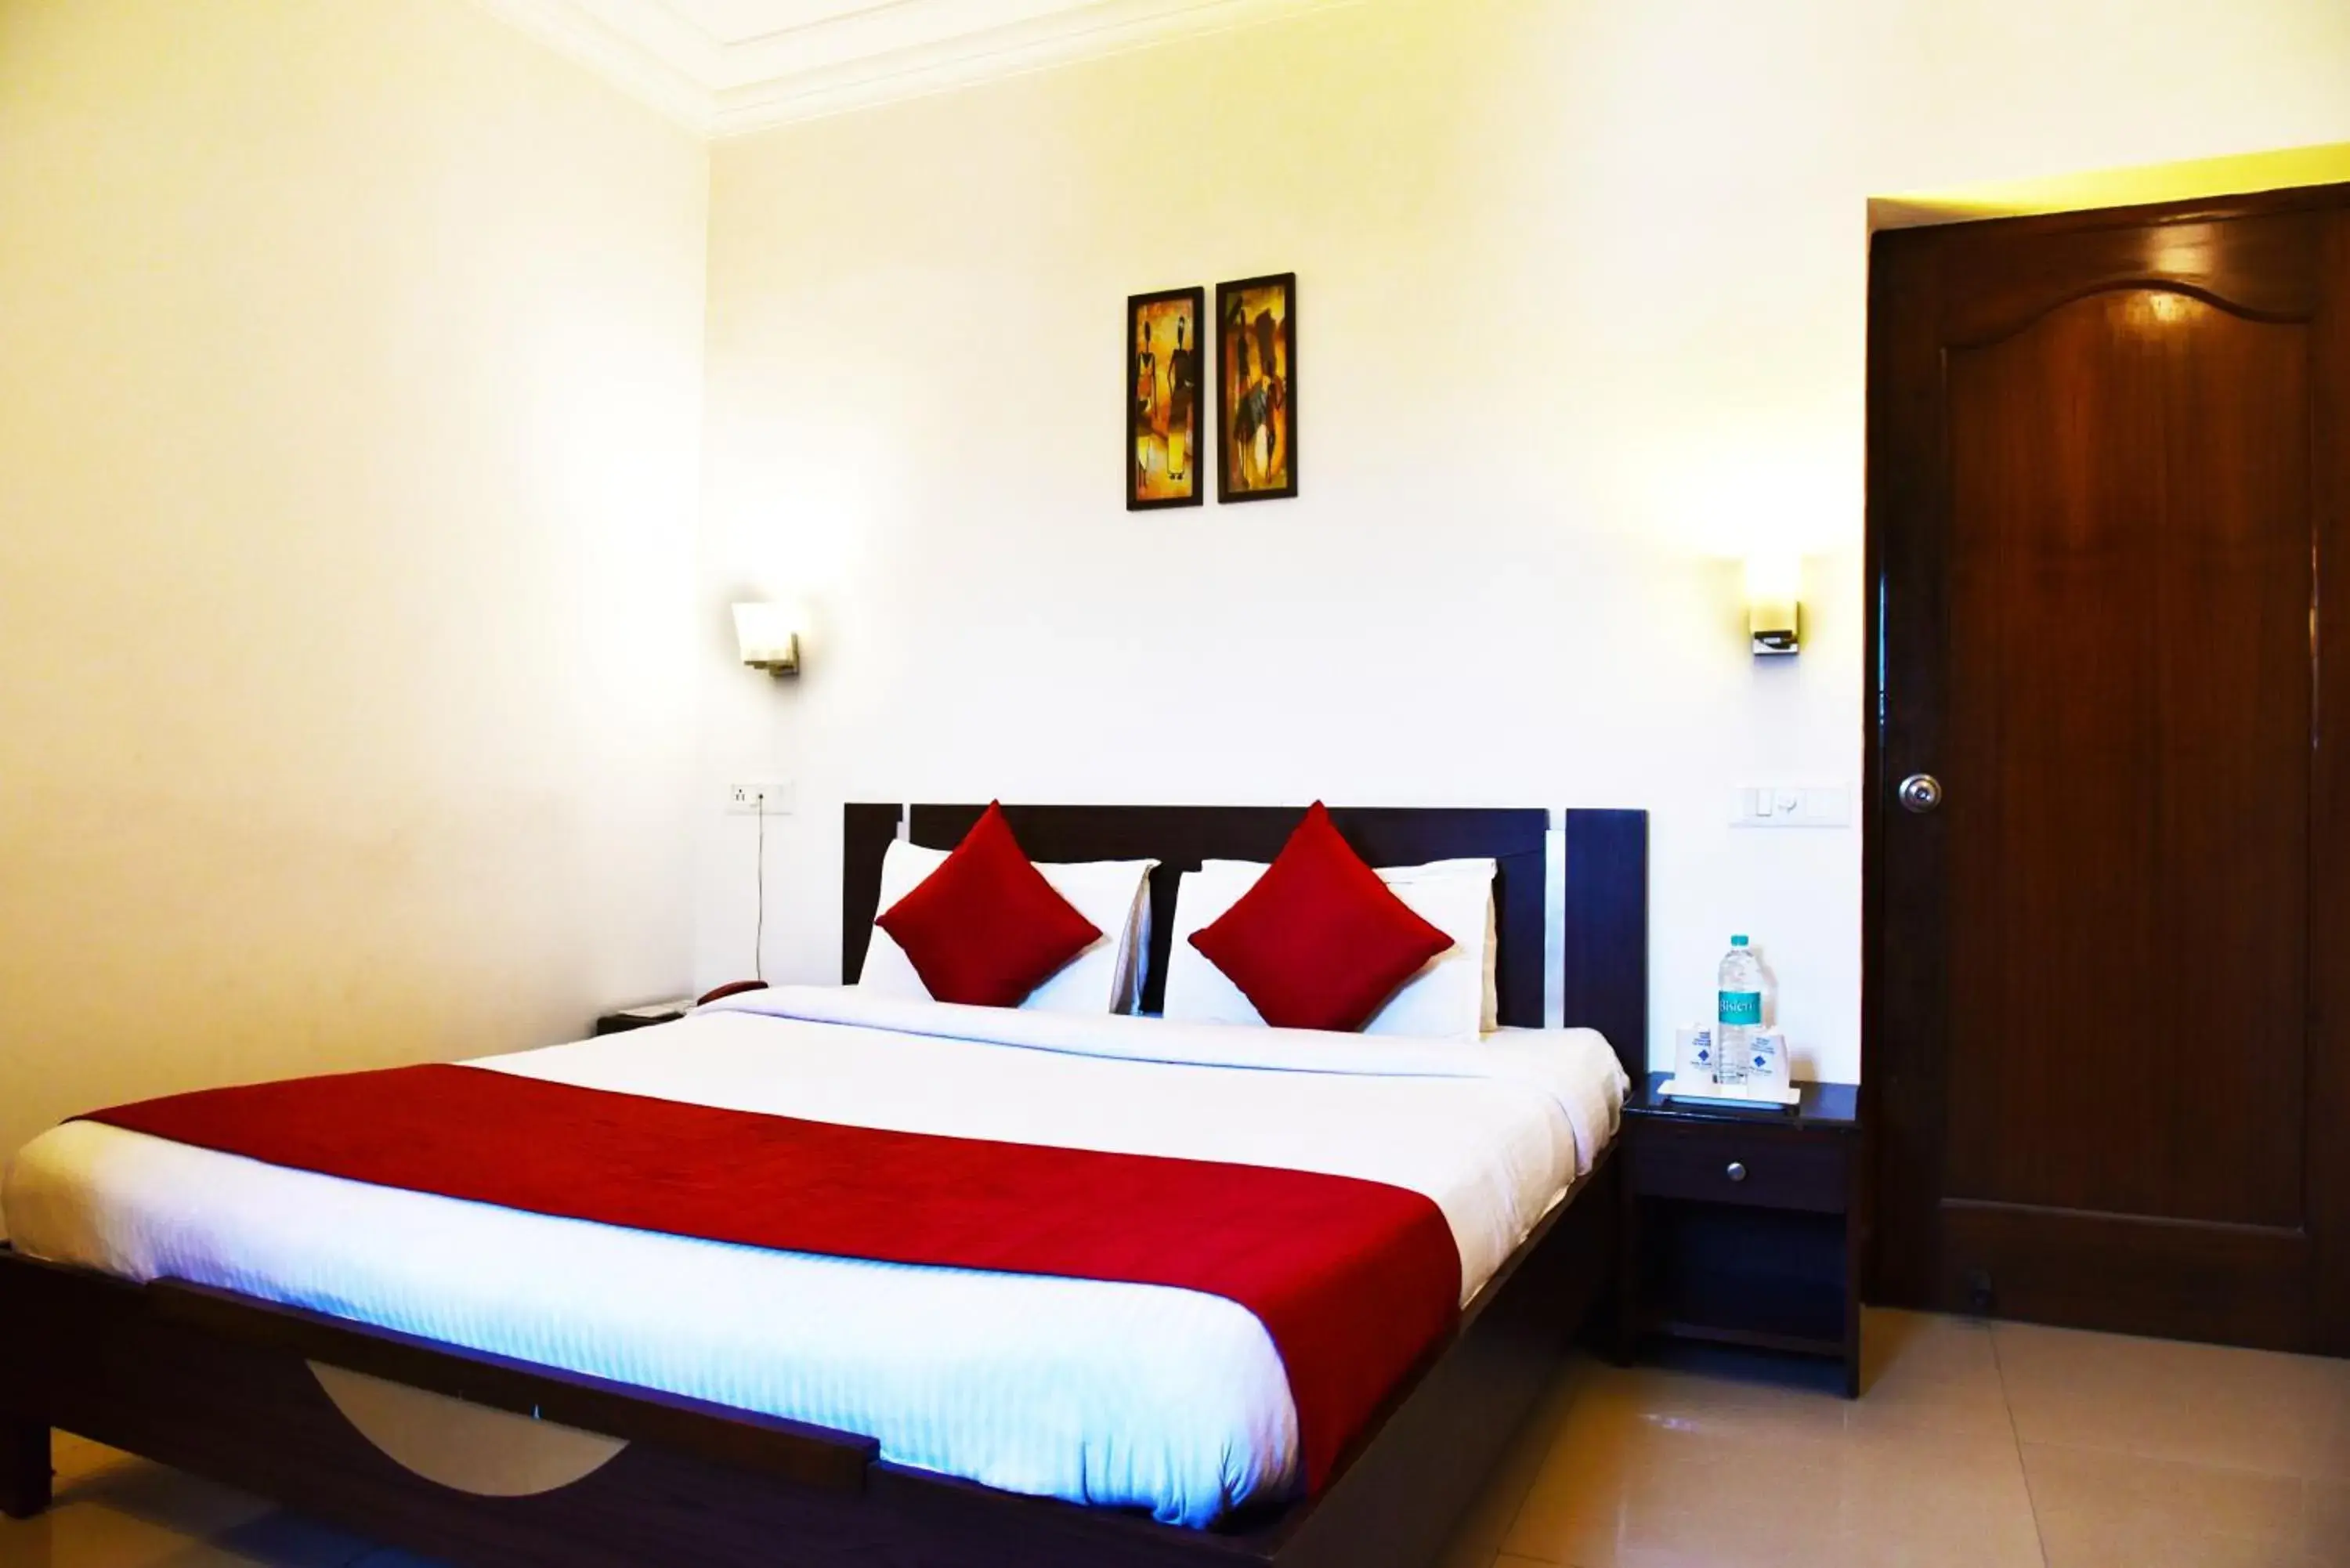 Bedroom, Room Photo in Hotel Sapphire Opposite Golden Temple